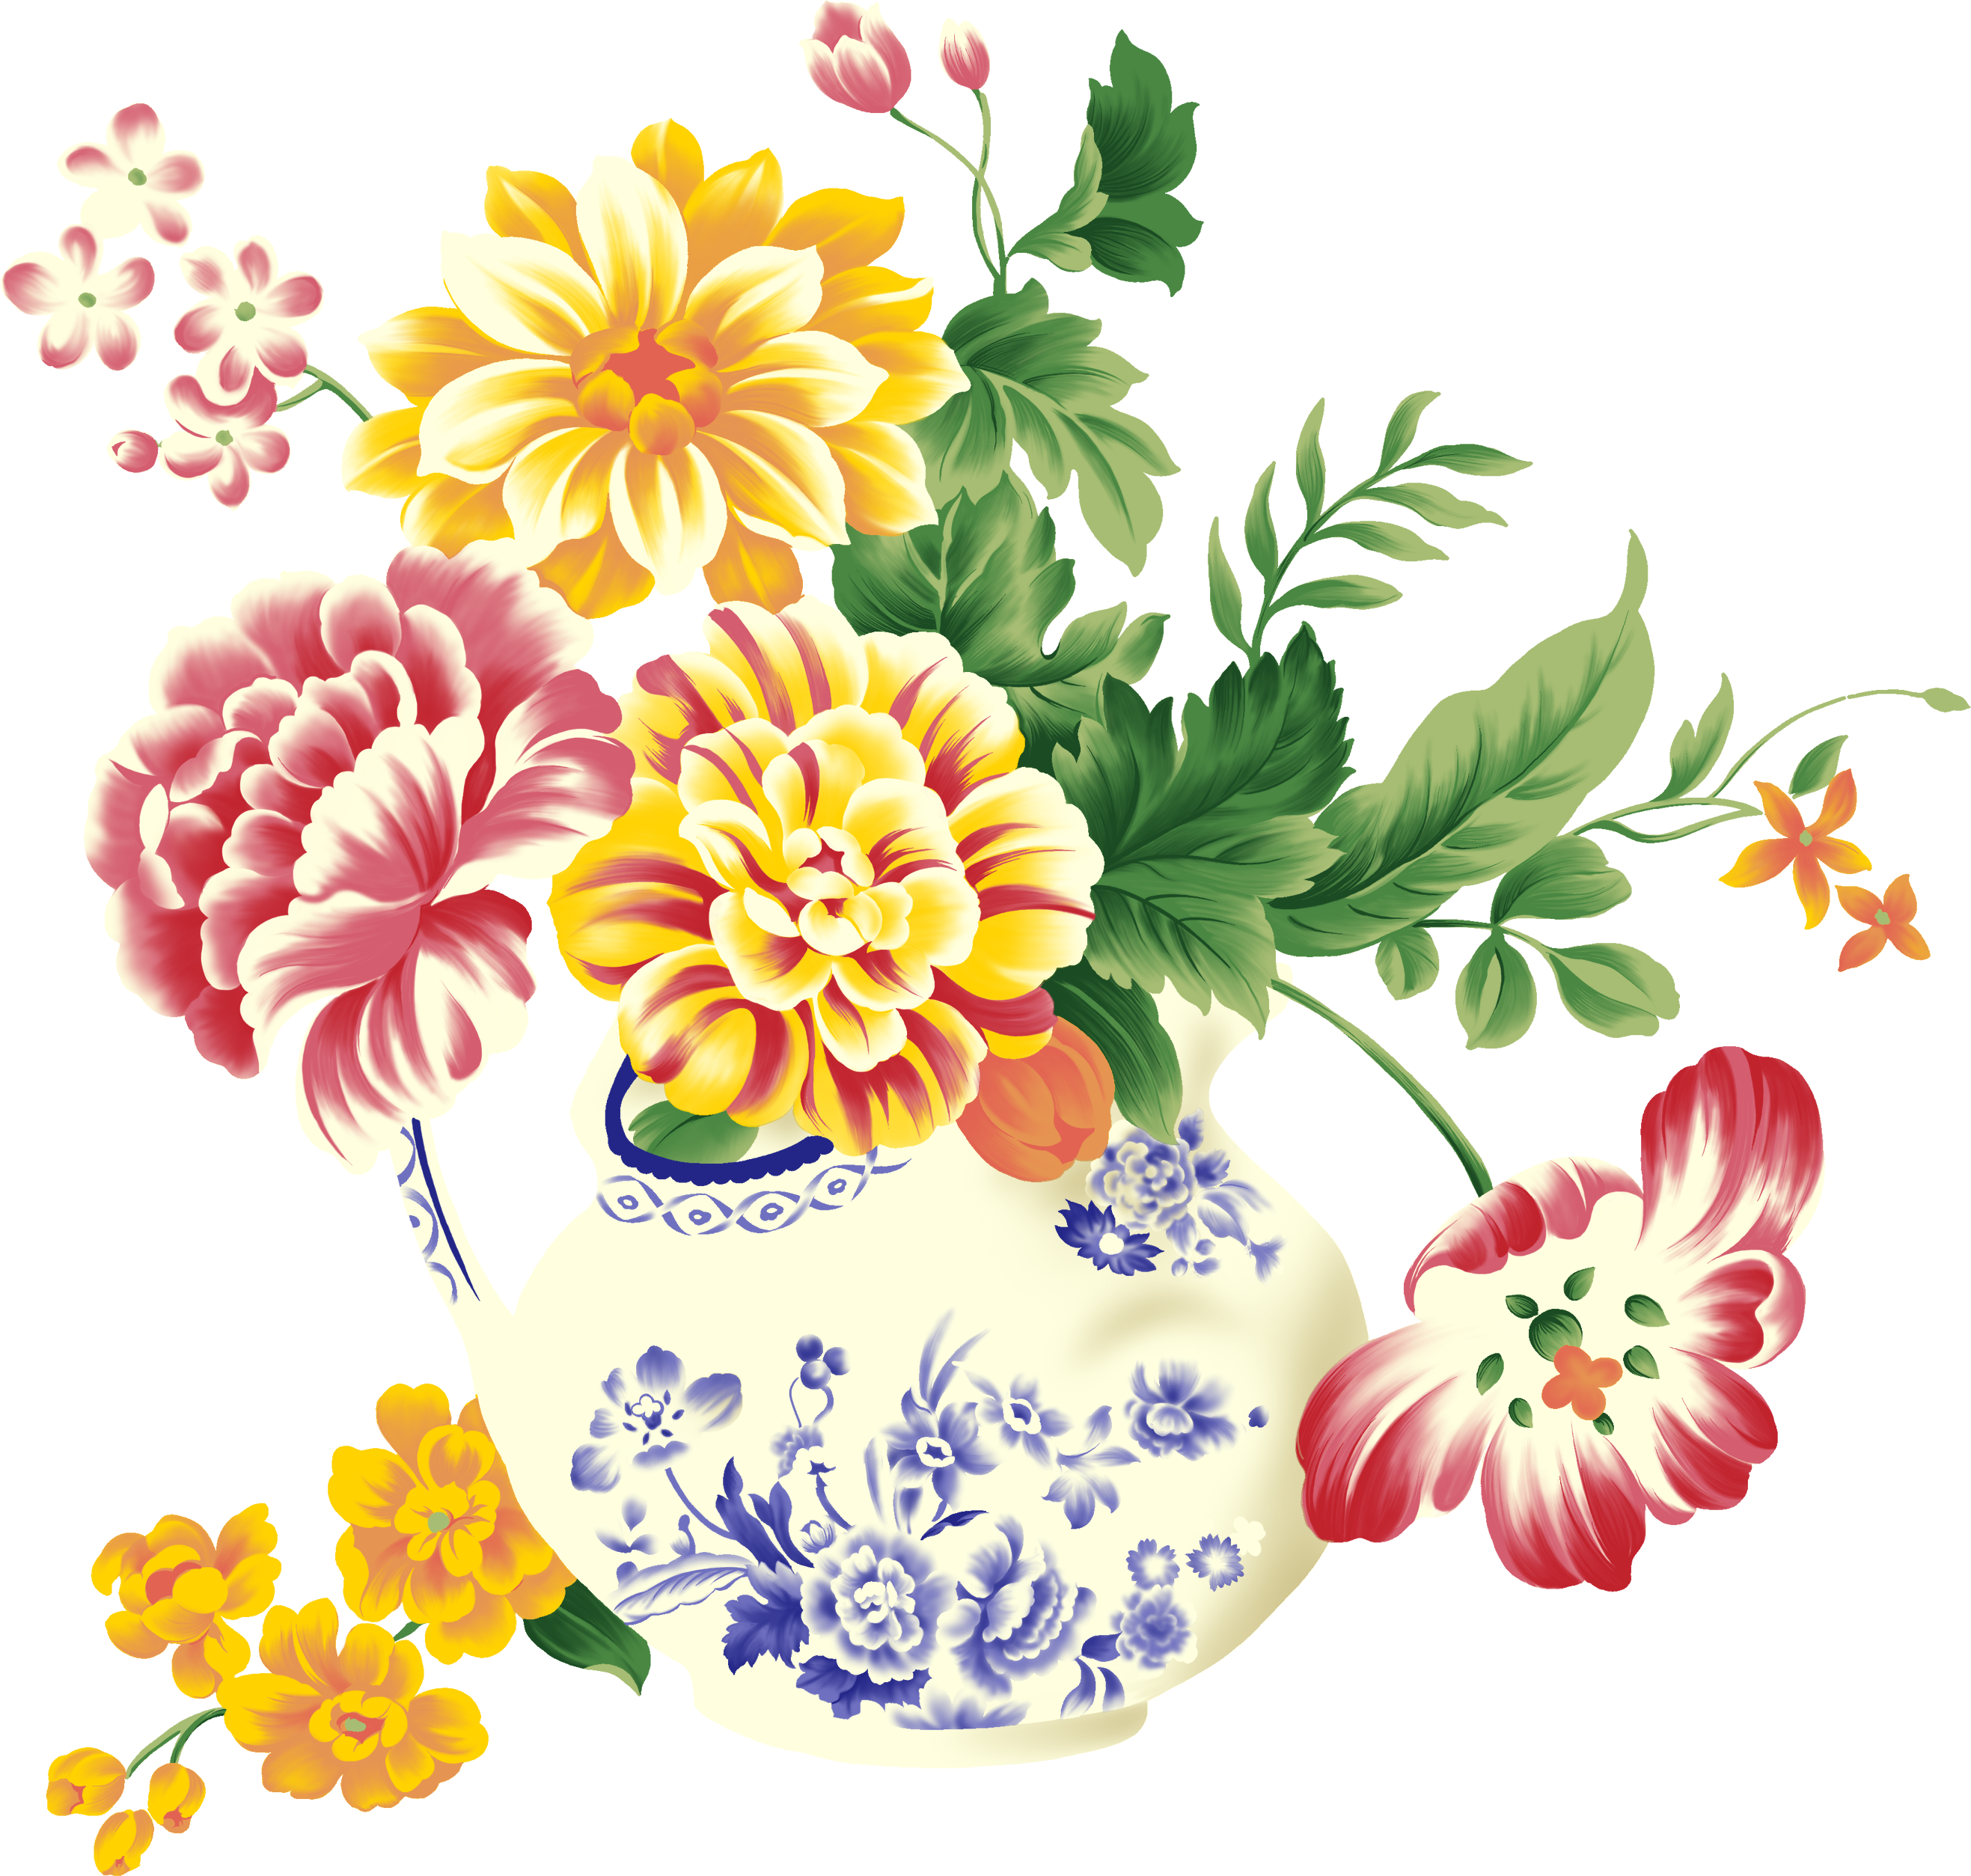 vase clipart 1 flower